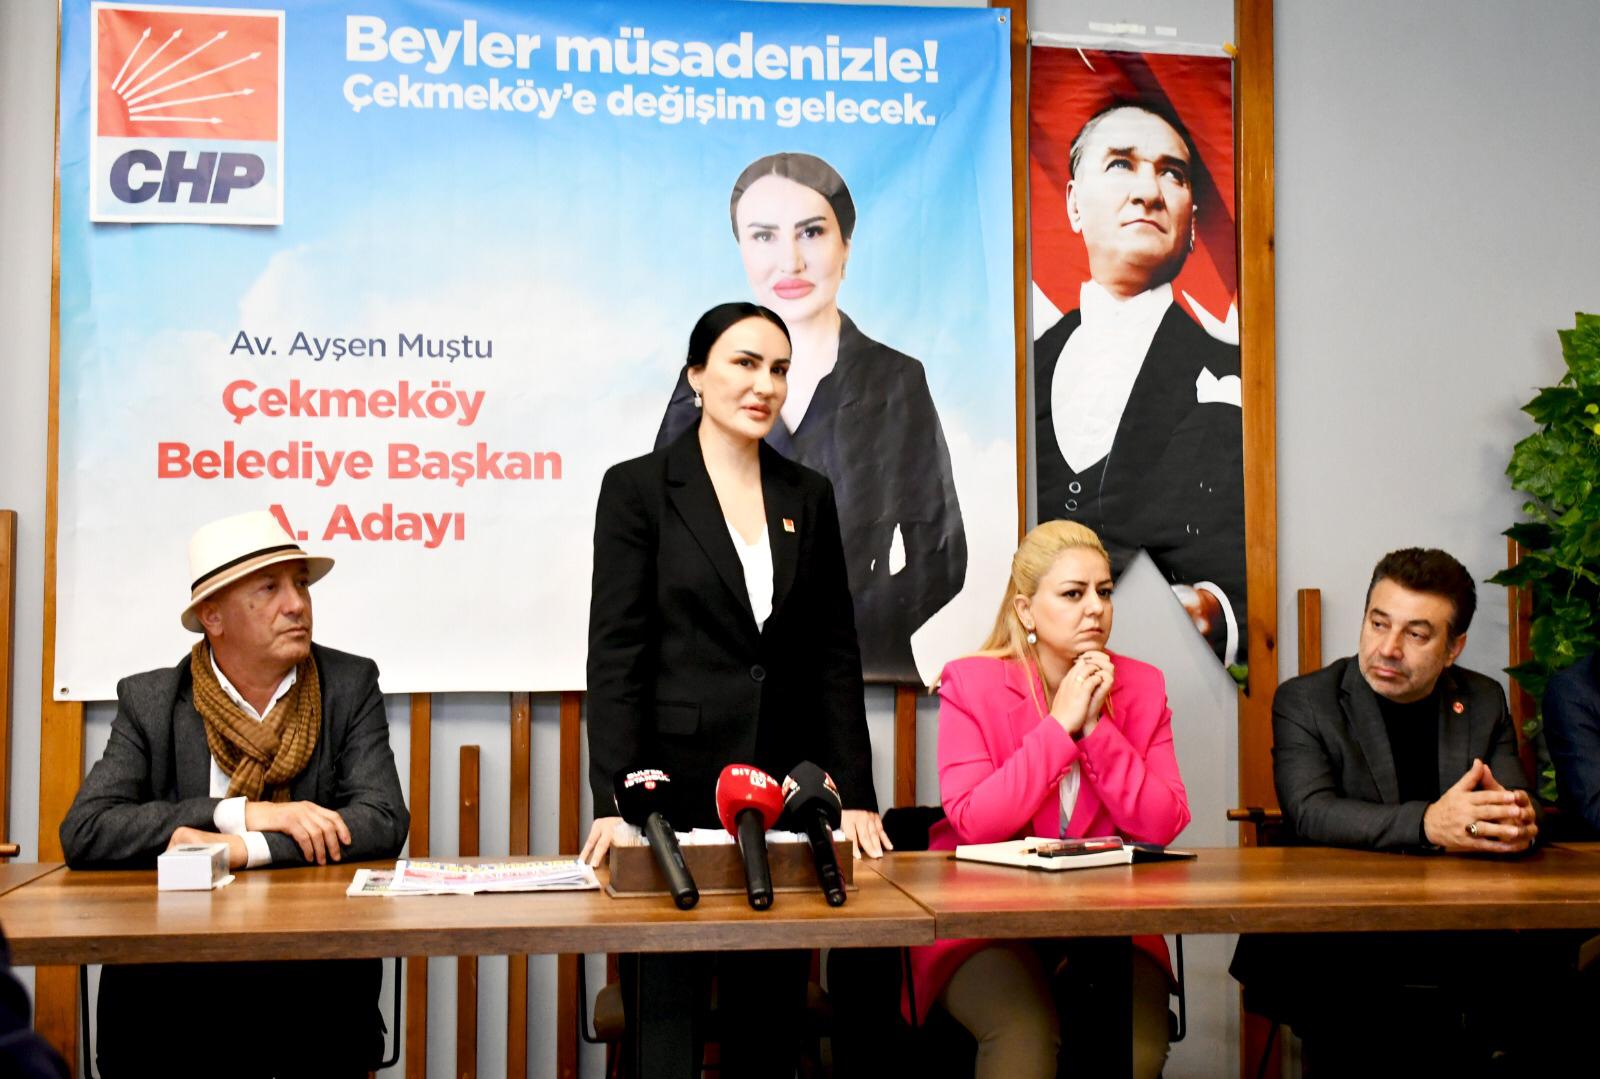 CHP Çekmeköy Belediye Başkan Aday Adayı Ayşen Muştu, Gazetecilerle Buluştu